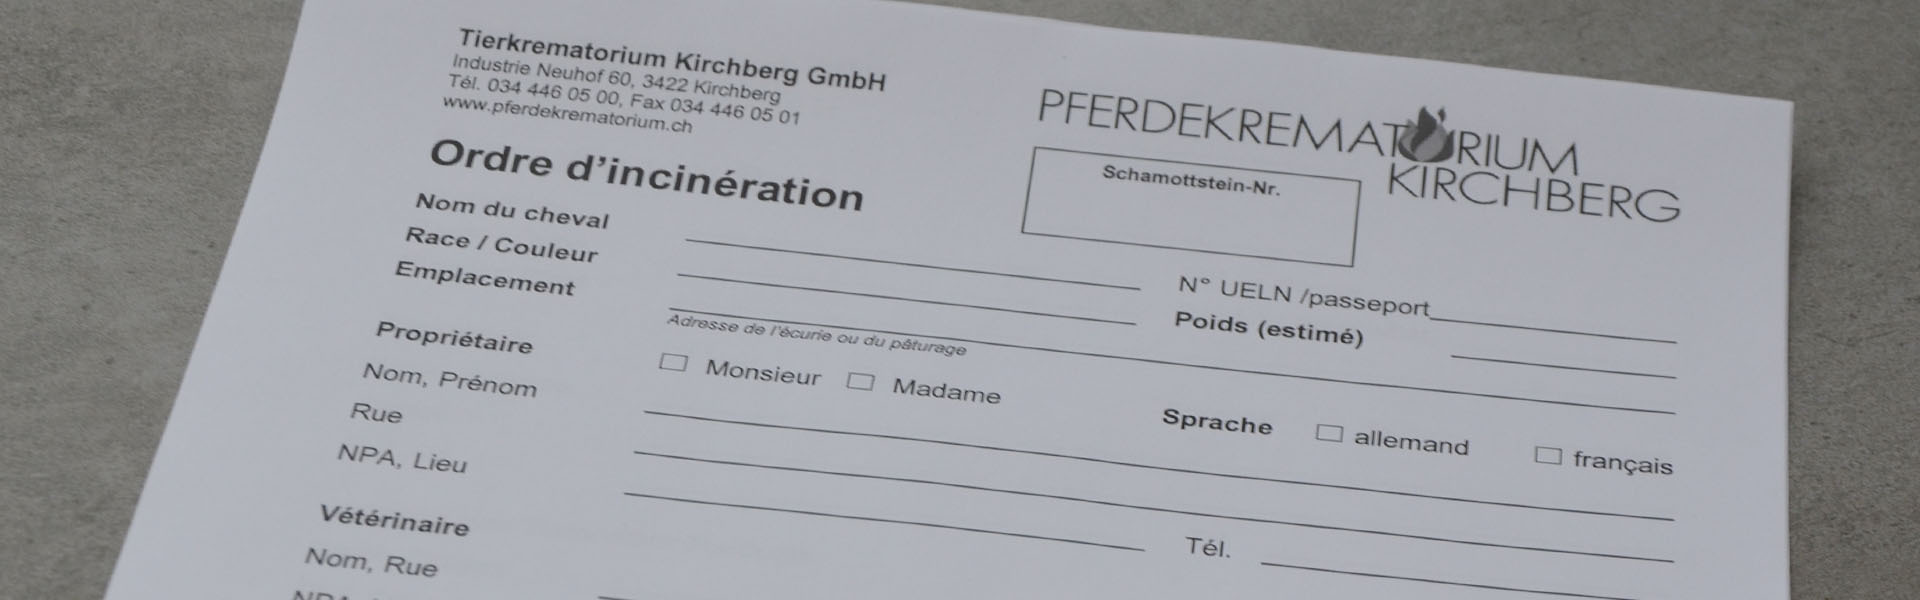 Crématoire pour chevaux Kirchberg - Ordre d'incinération - Pferdekrematorium Kirchberg